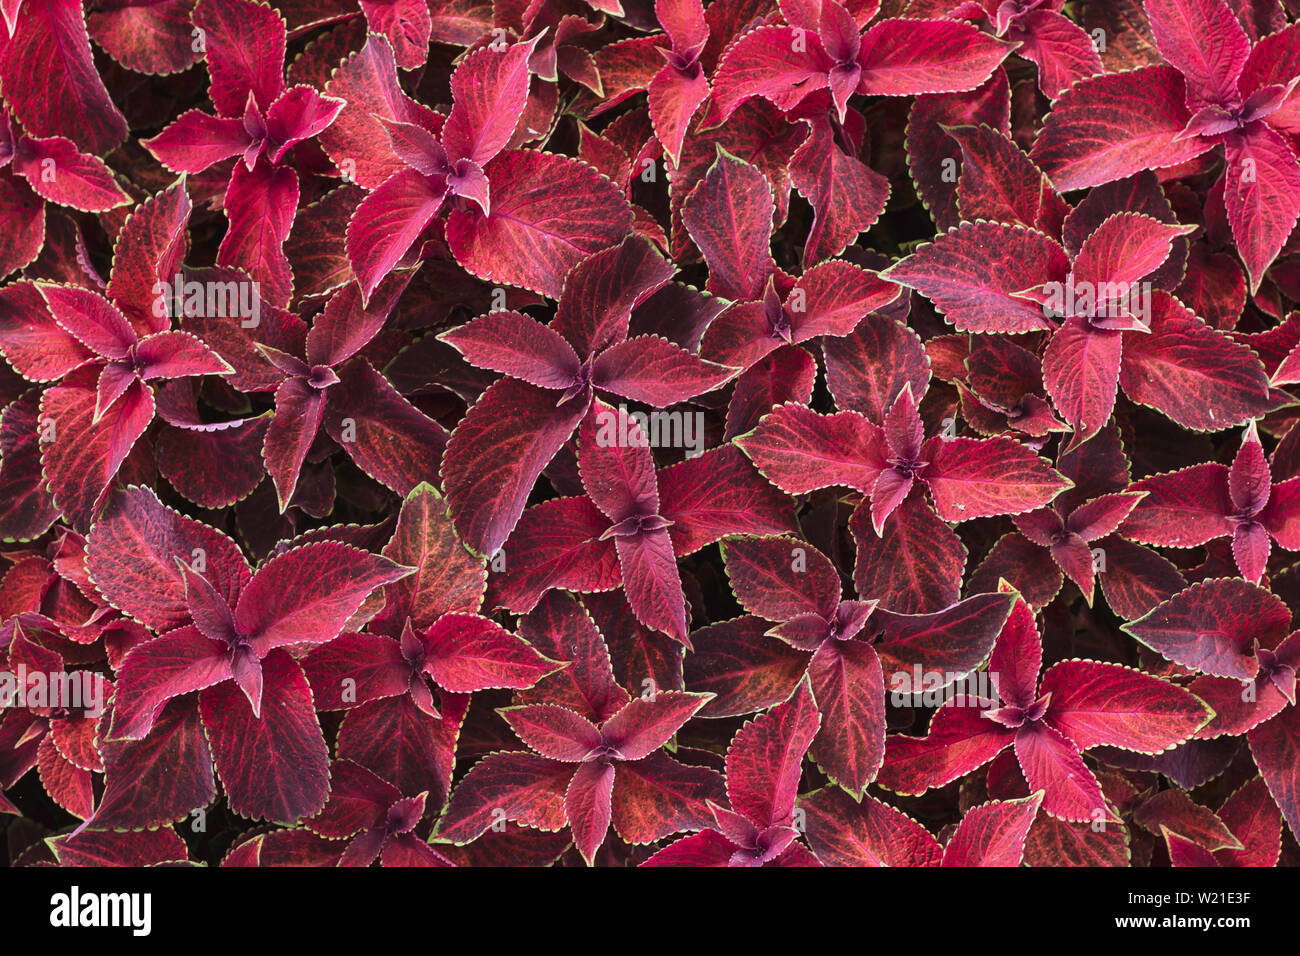 Leuchtend rote Blätter der mehrjährige Pflanze Coleus, plectranthus scutellarioides. Dekorative red velvet coleus Fairway Pflanzen. Hintergrund der roten Blätter. Stockfoto